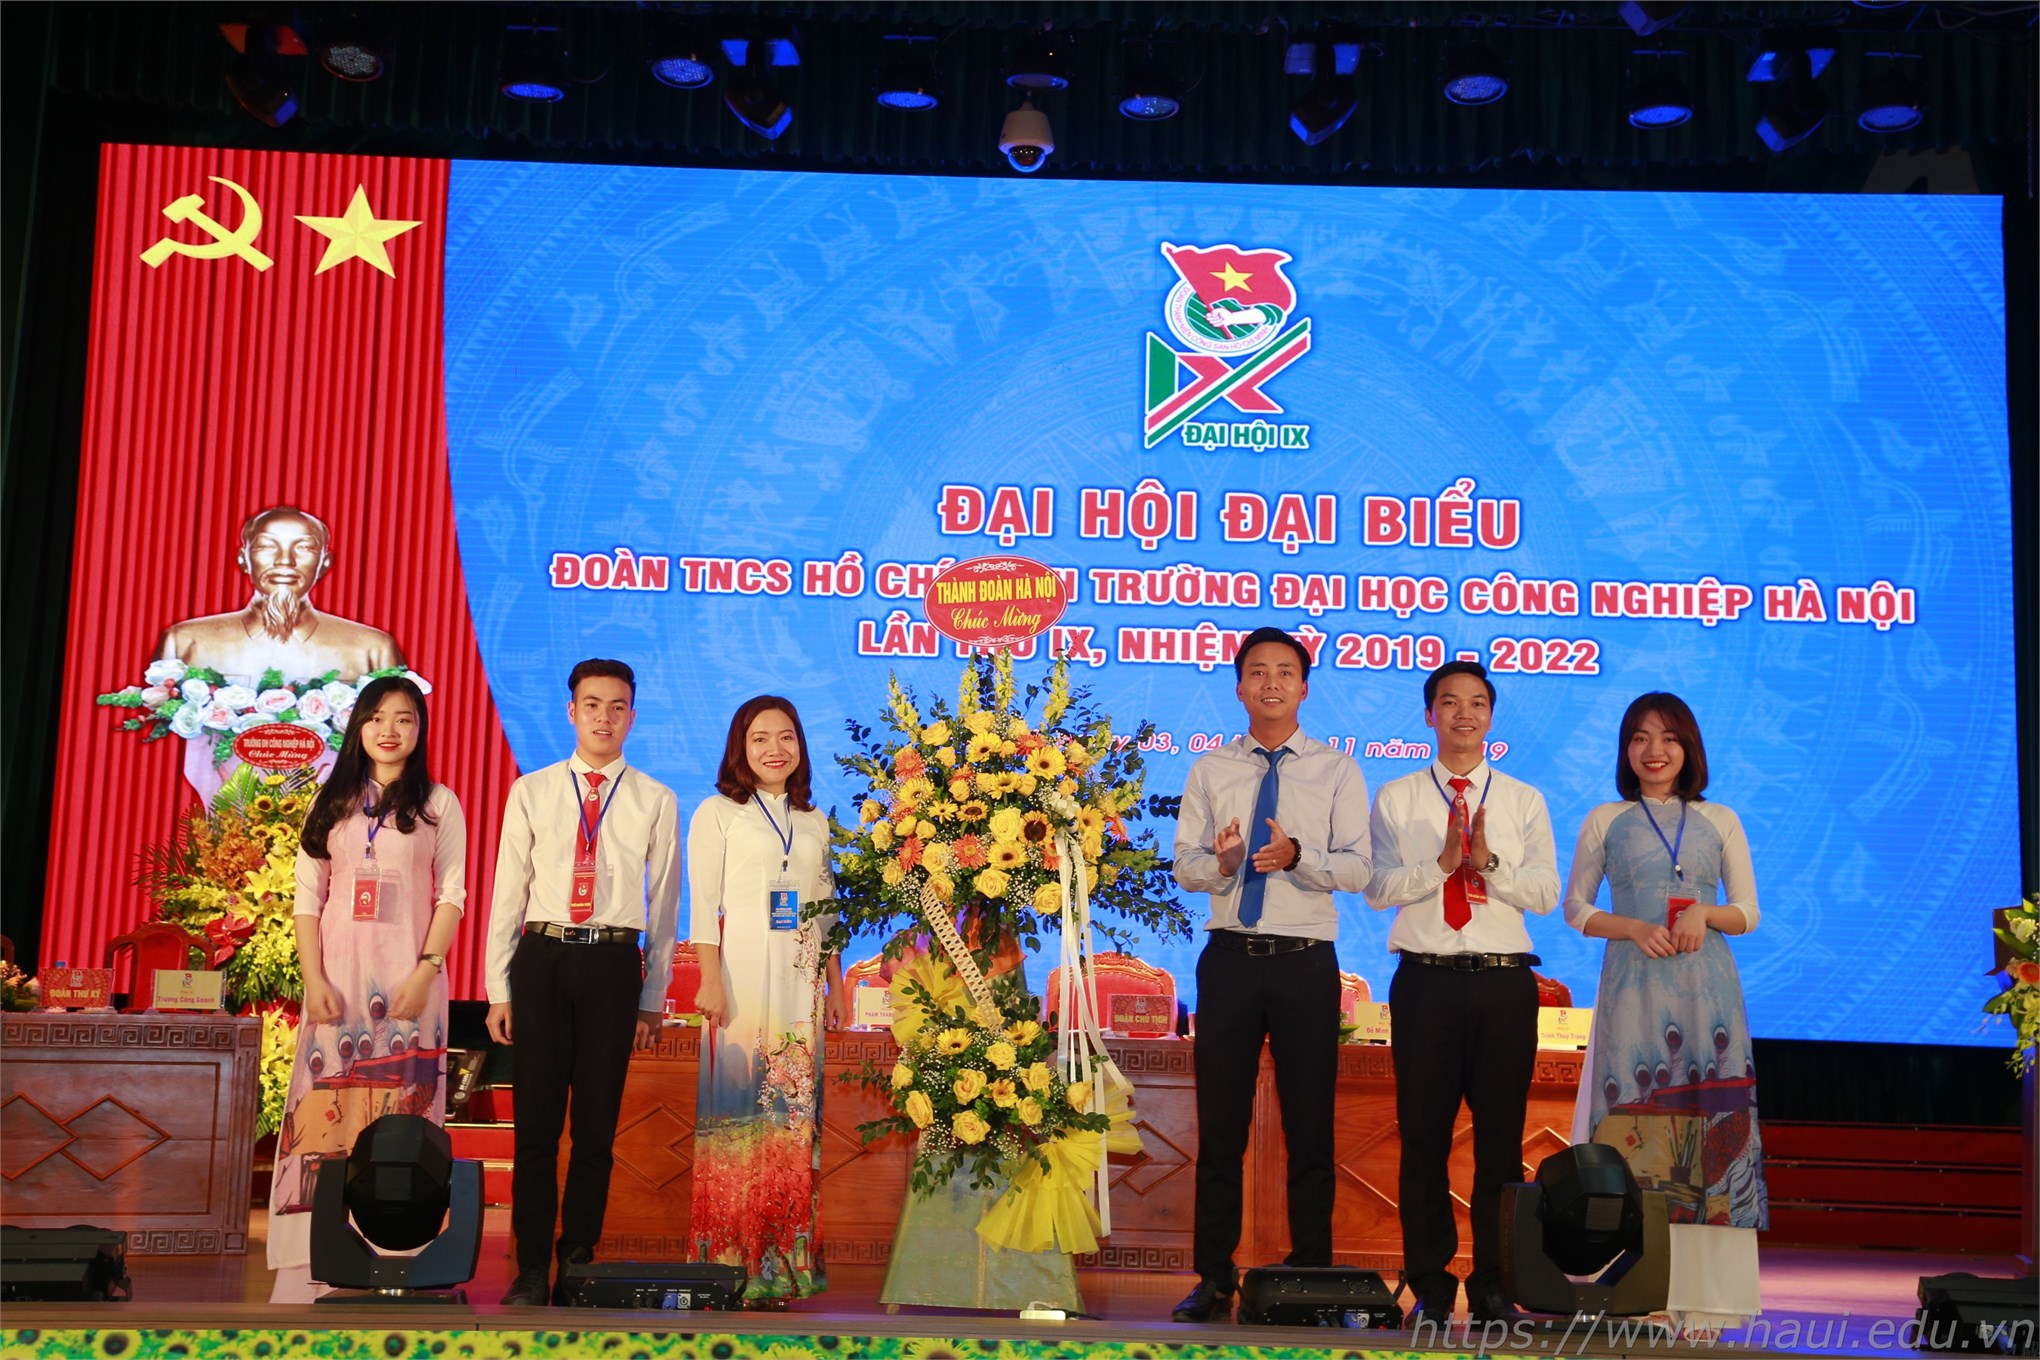 Đại hội Đại biểu Đoàn TNCS Hồ Chí Minh trường Đại học Công nghiệp Hà Nội lần thứ IX, nhiệm kỳ 2019 – 2022 thành công tốt đẹp